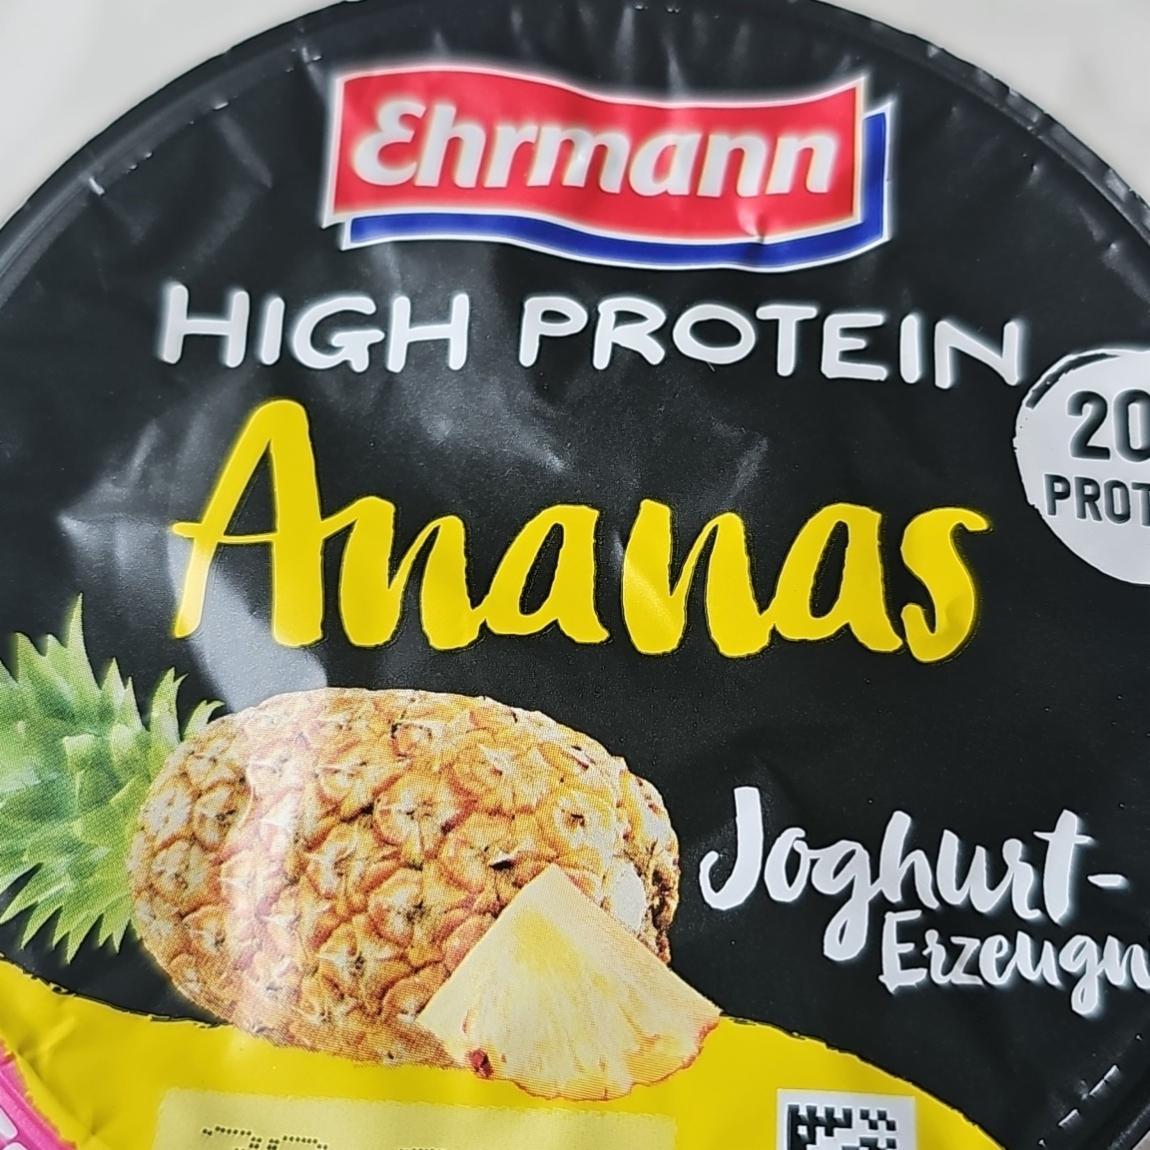 Fotografie - High Protein Ananas Joghurt-Erzeugnis Ehrmann